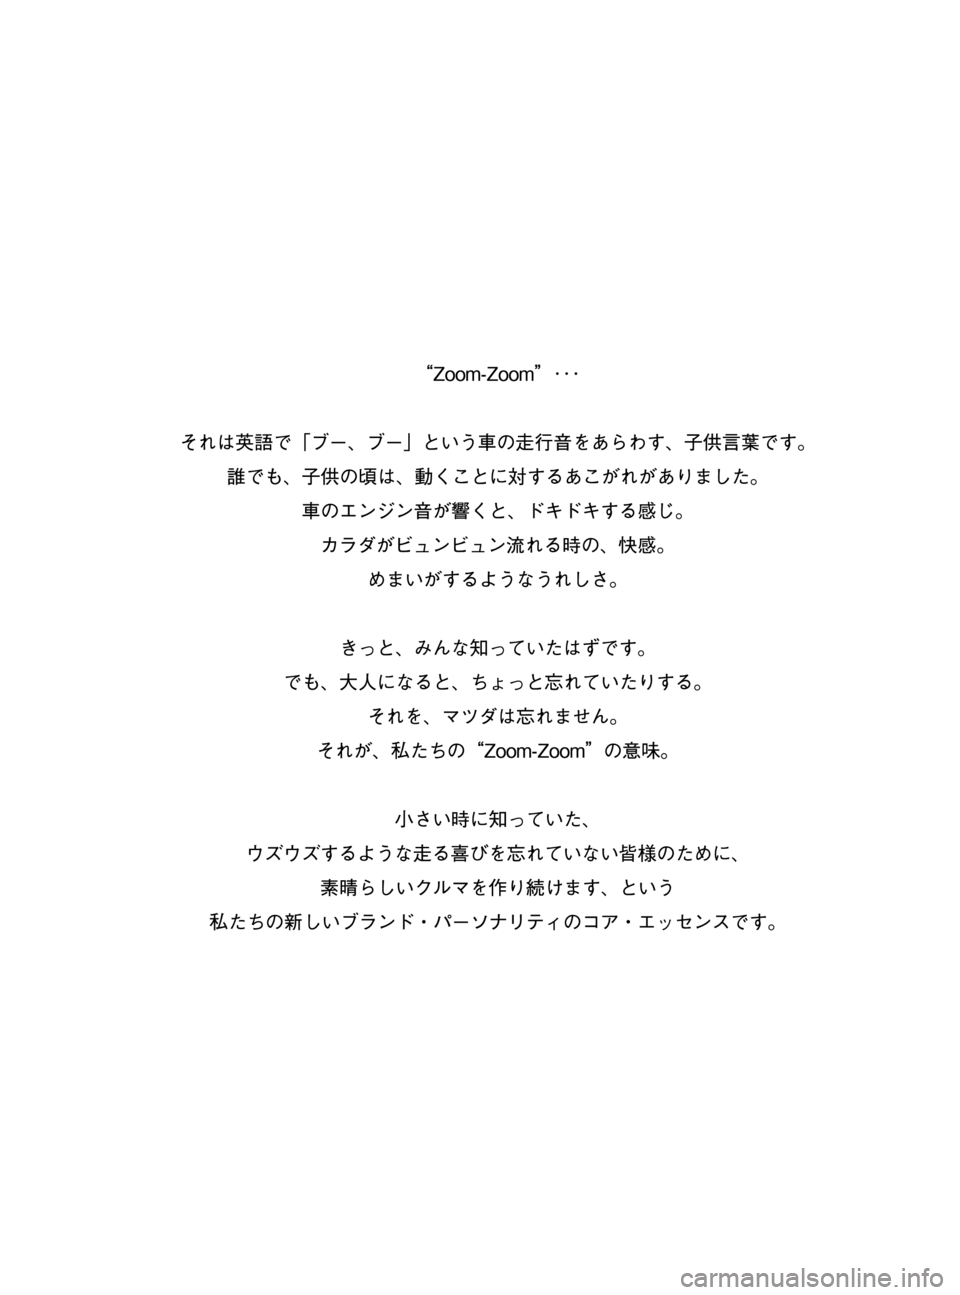 MAZDA MODEL BONGO TRACK 2016  取扱説明書 (in Japanese) Black plate (1,1)
BONGO TRUCK_JK_初版1ページ
2015年12月10日02:12 PM
Form No.JK 